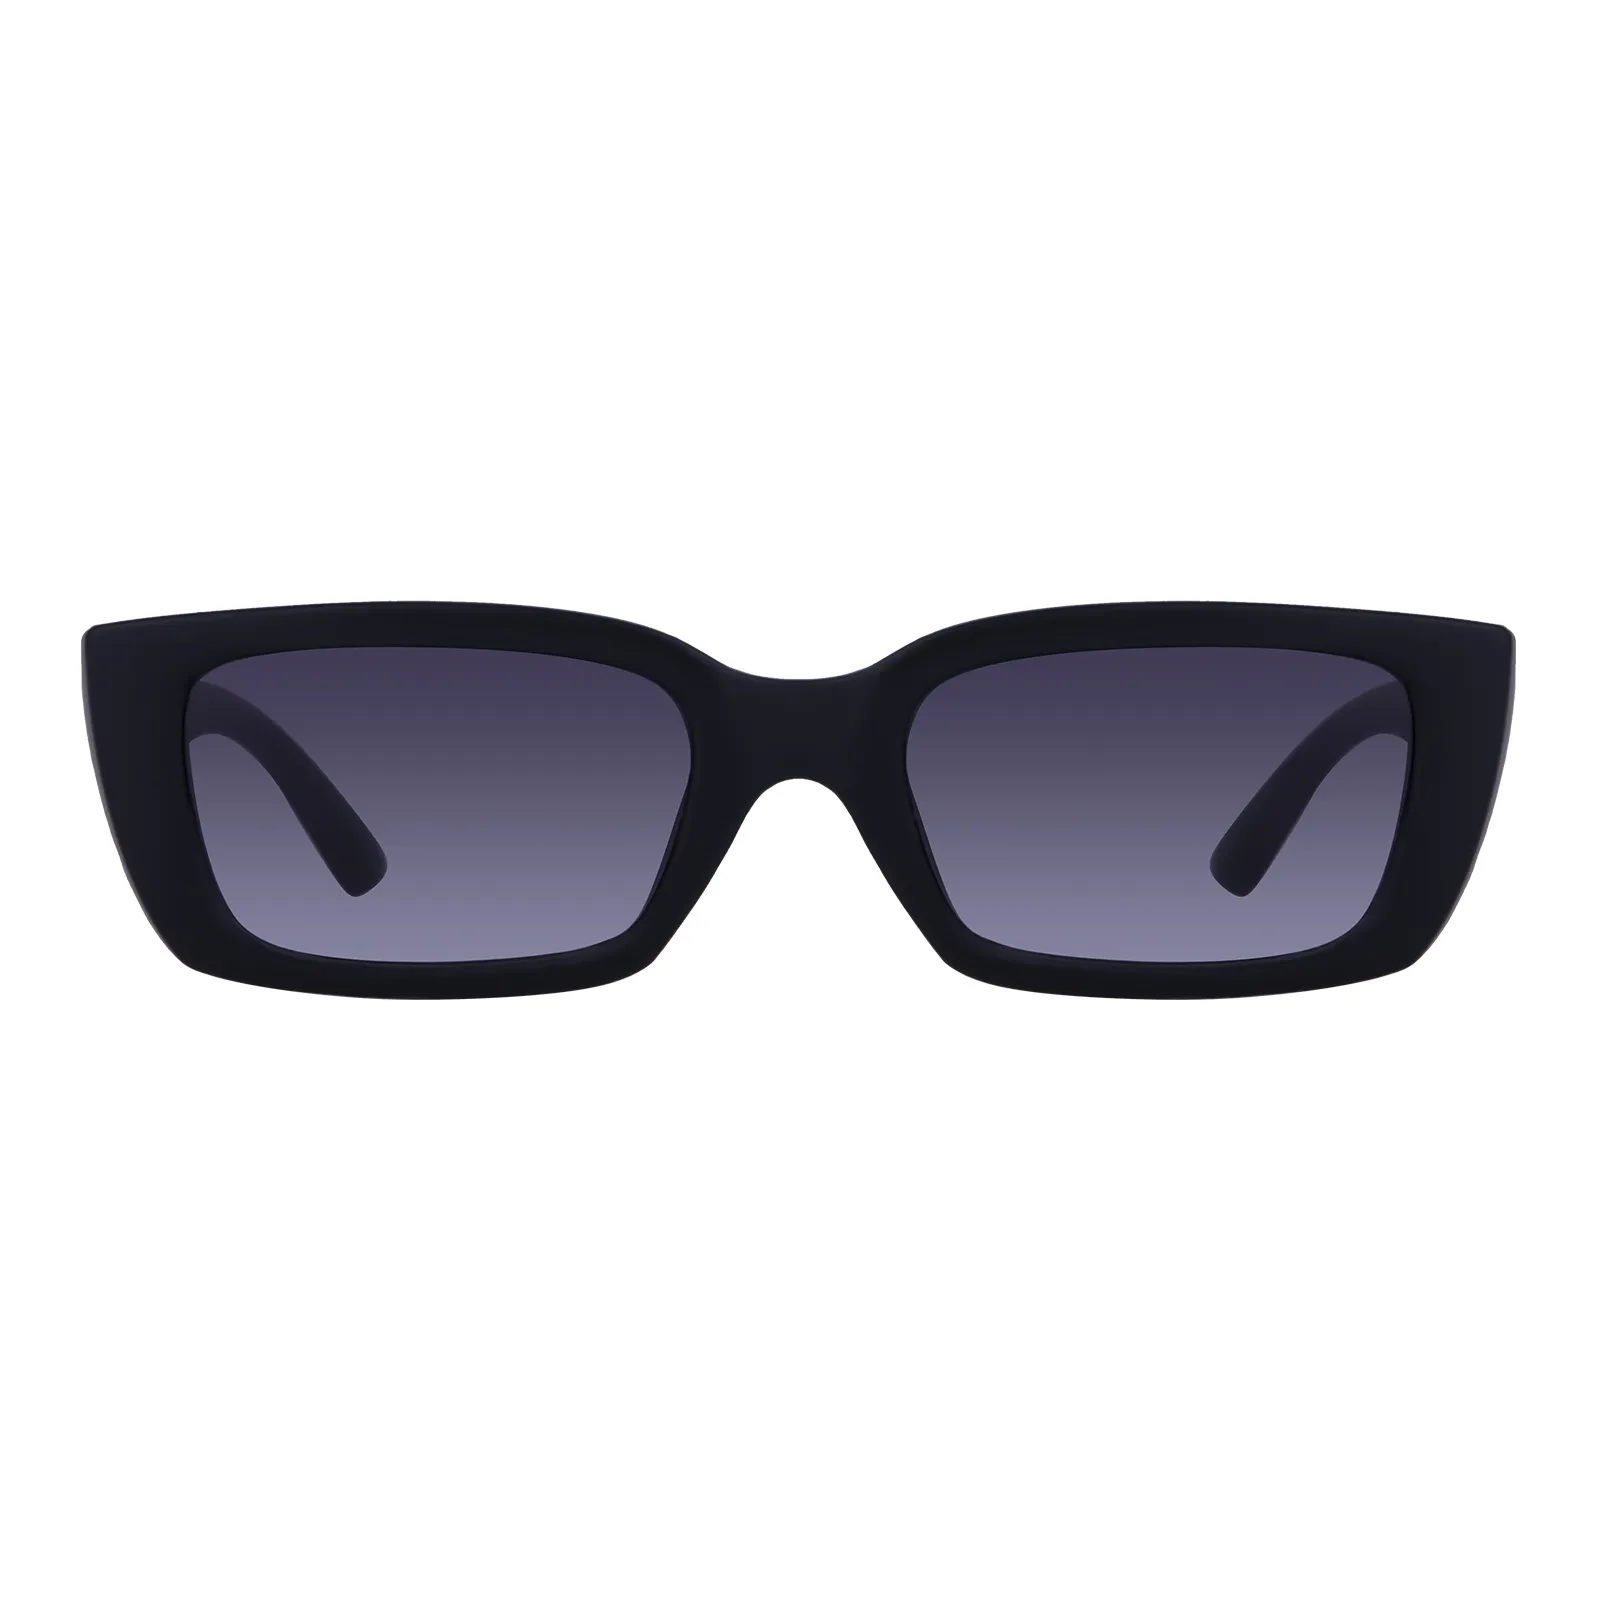 Suzanne - Square Black Sunglasses for Women